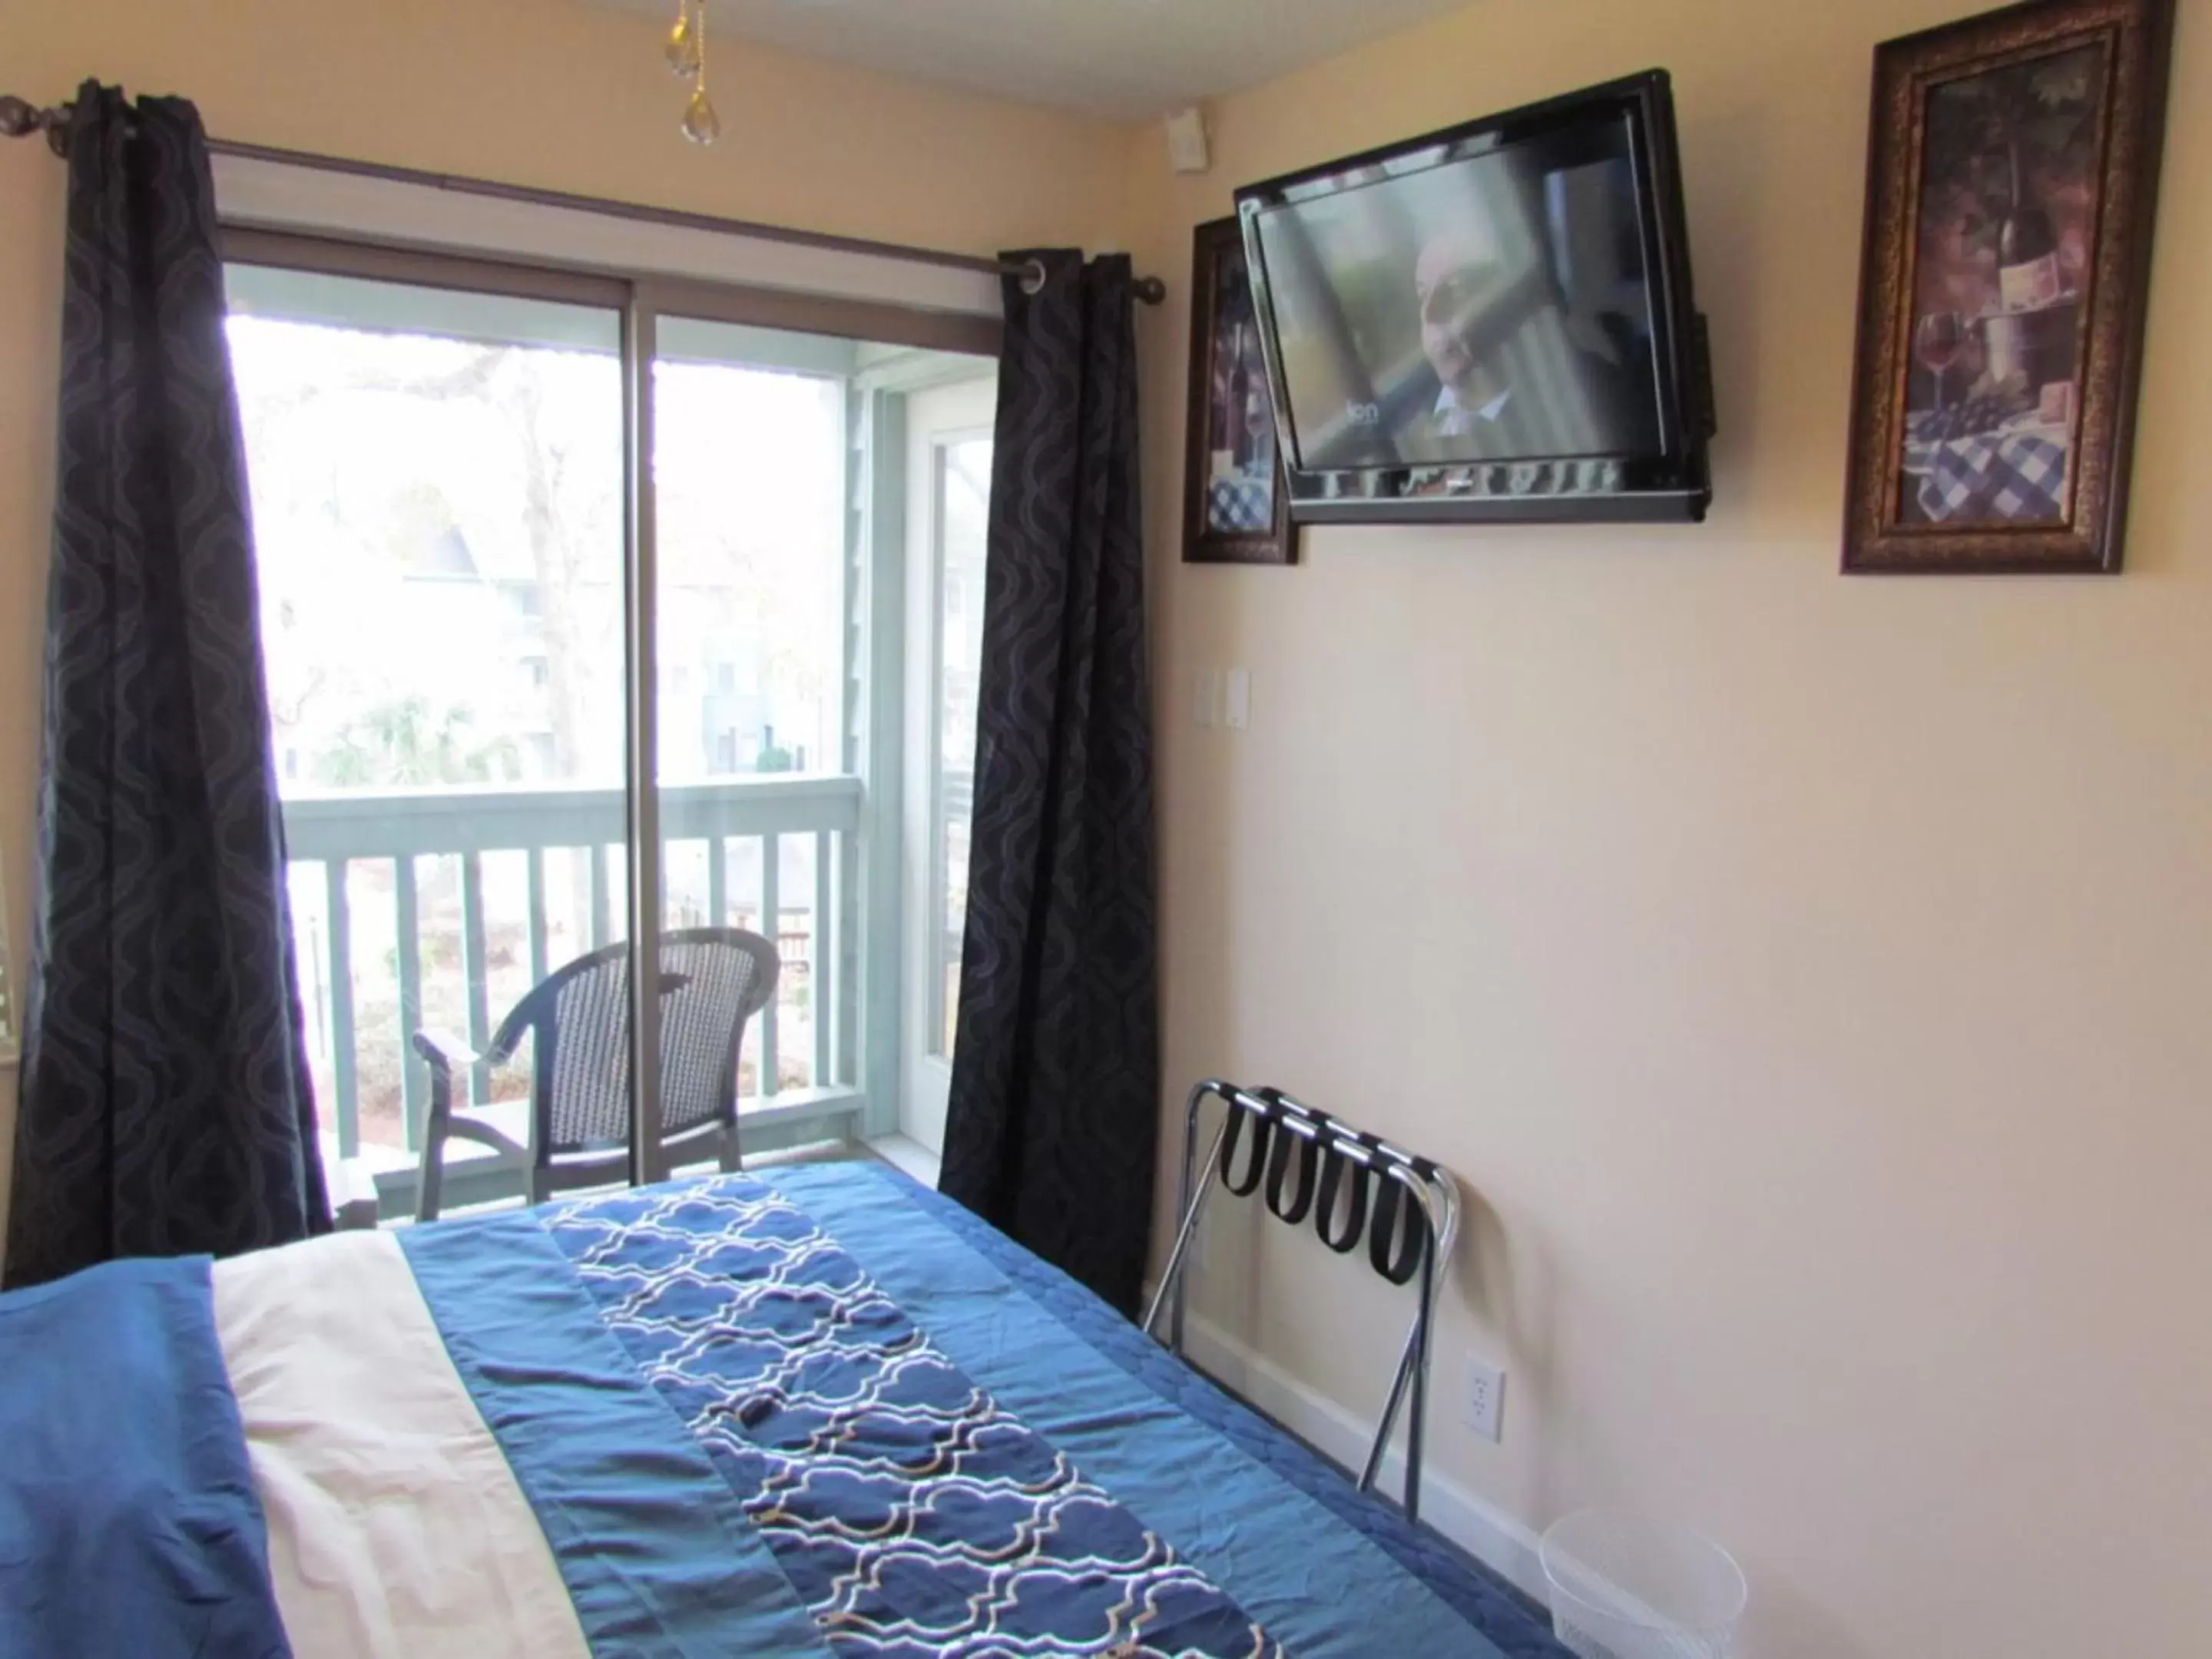 Bedroom in Myrtle Beach Resort